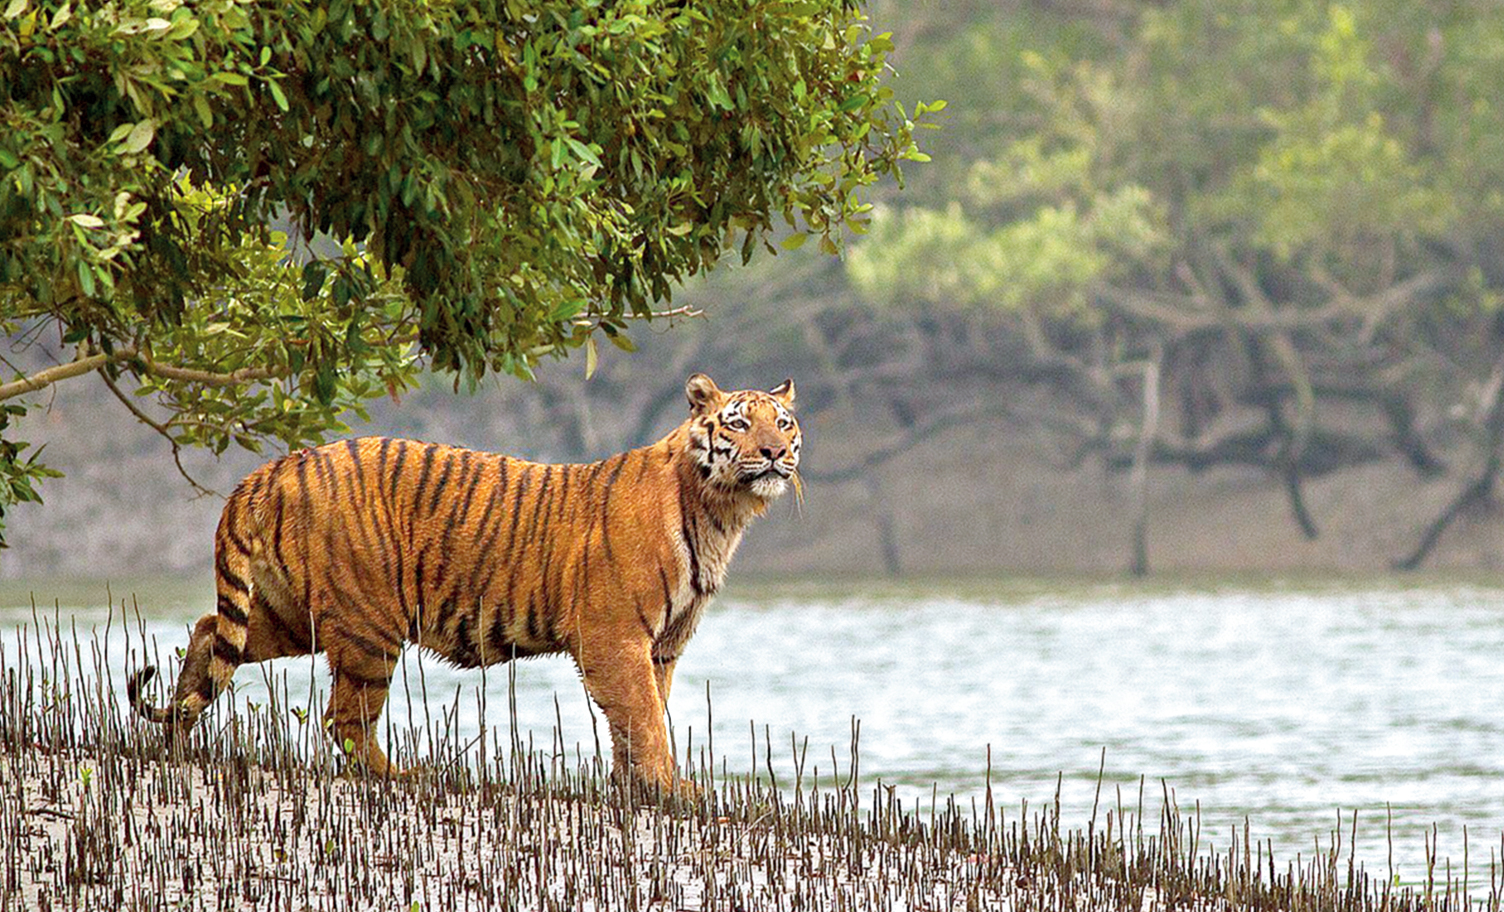 A Royal Bengal tiger
